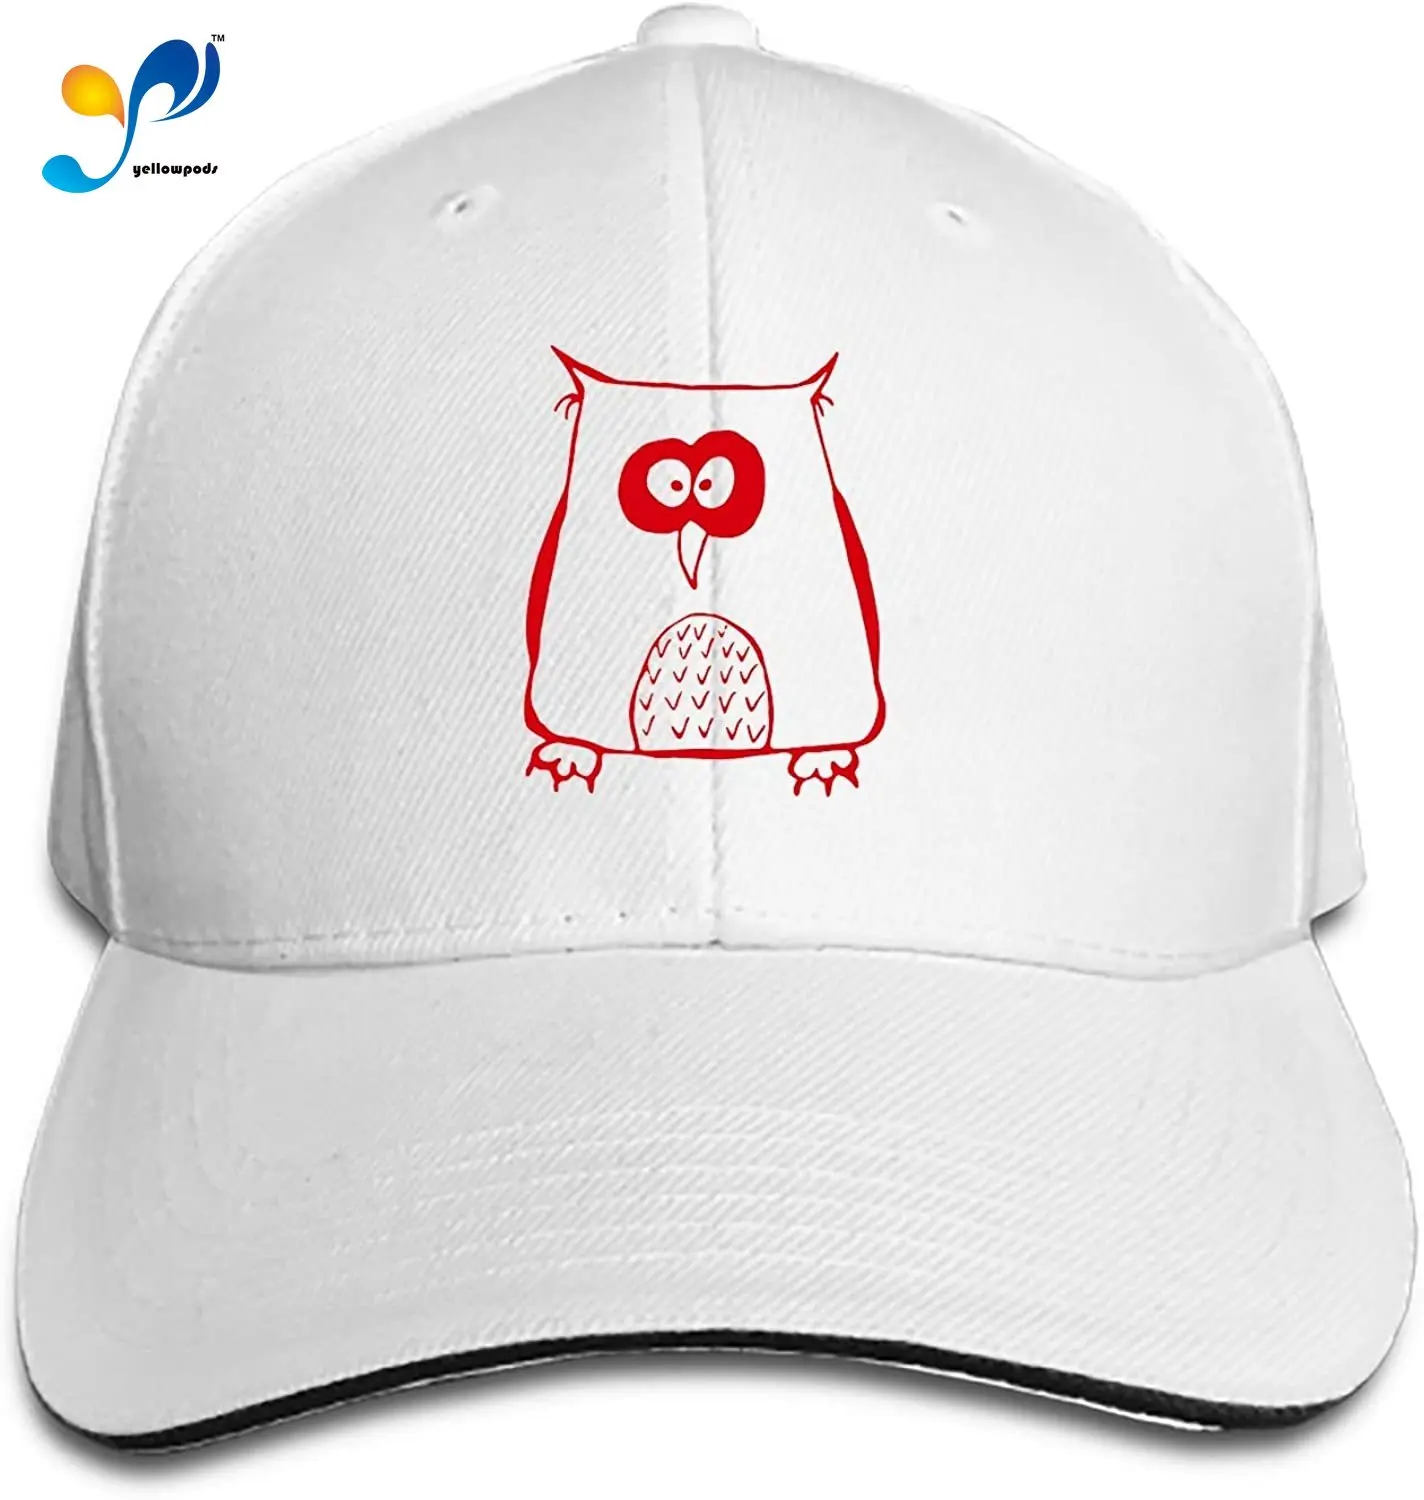 

Owl Unisex Washed Twill Baseball Cap Adjustable Peaked Sandwich Hat